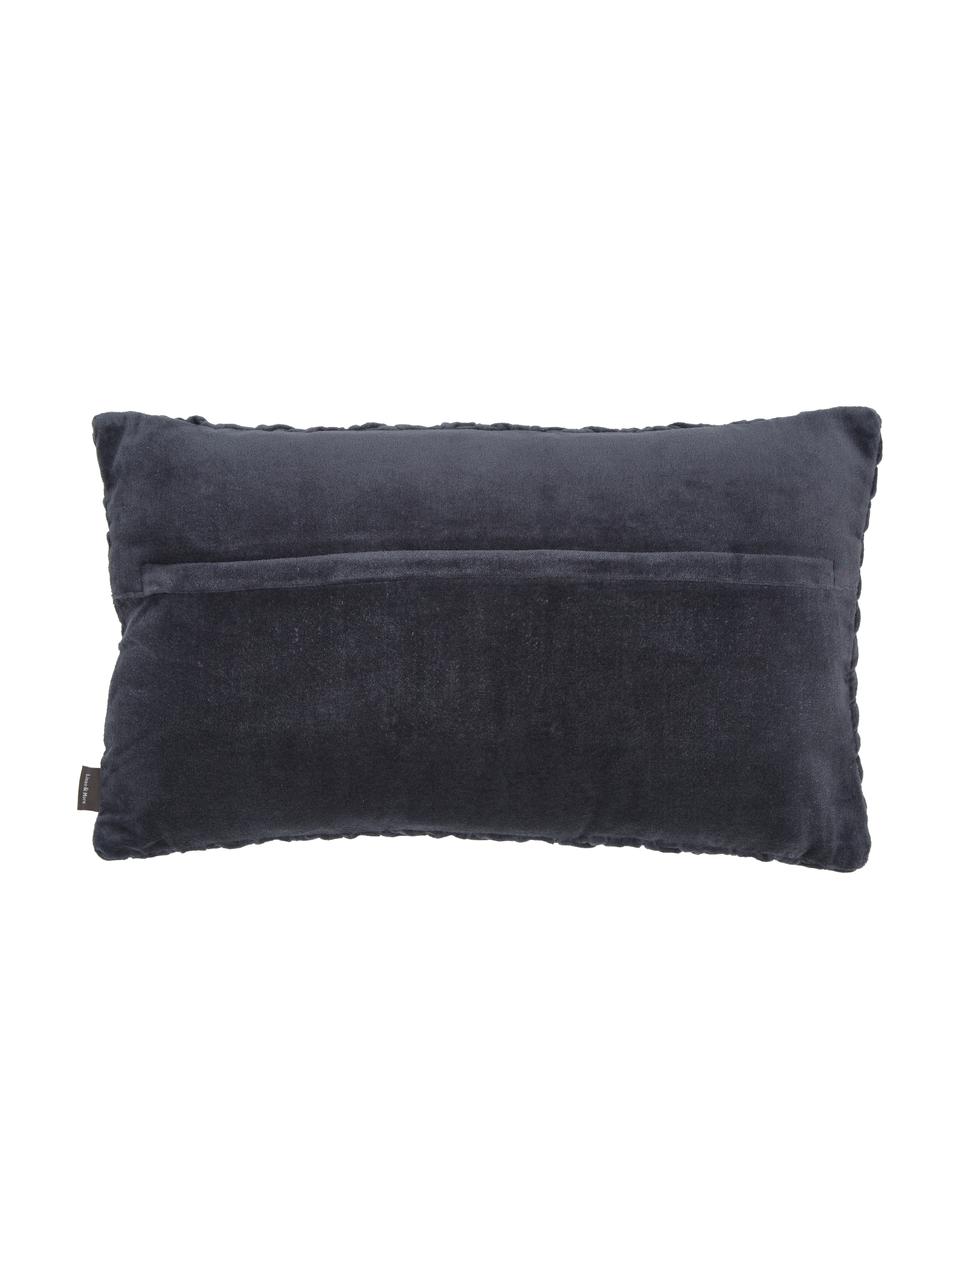 Cuscino in velluto grigio scuro con superficie arruffata Smock, Rivestimento: 100% velluto di cotone, Grigio scuro, Larg. 30 x Lung. 50 cm